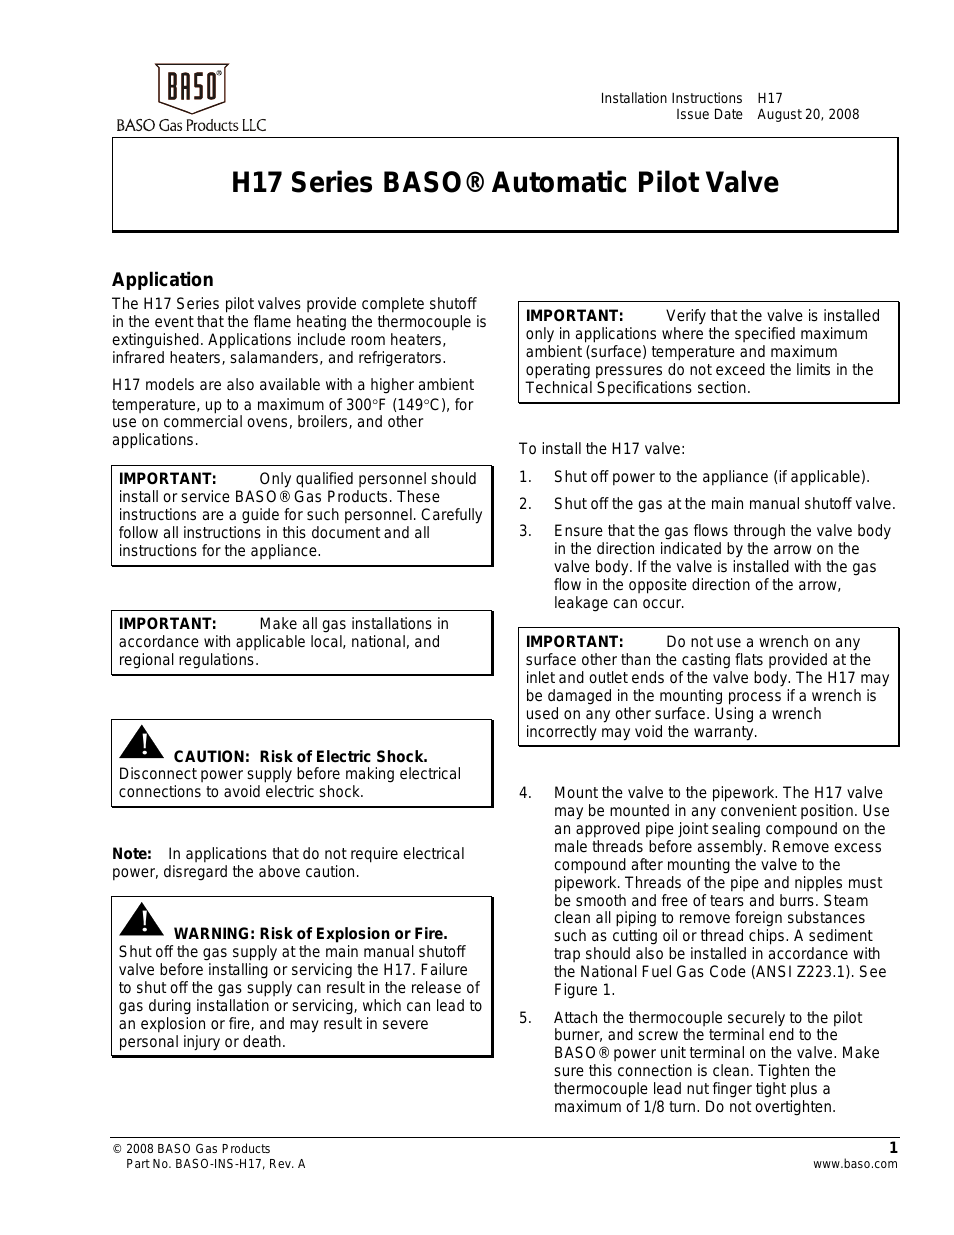 H17 Series Automatic Pilot Valve